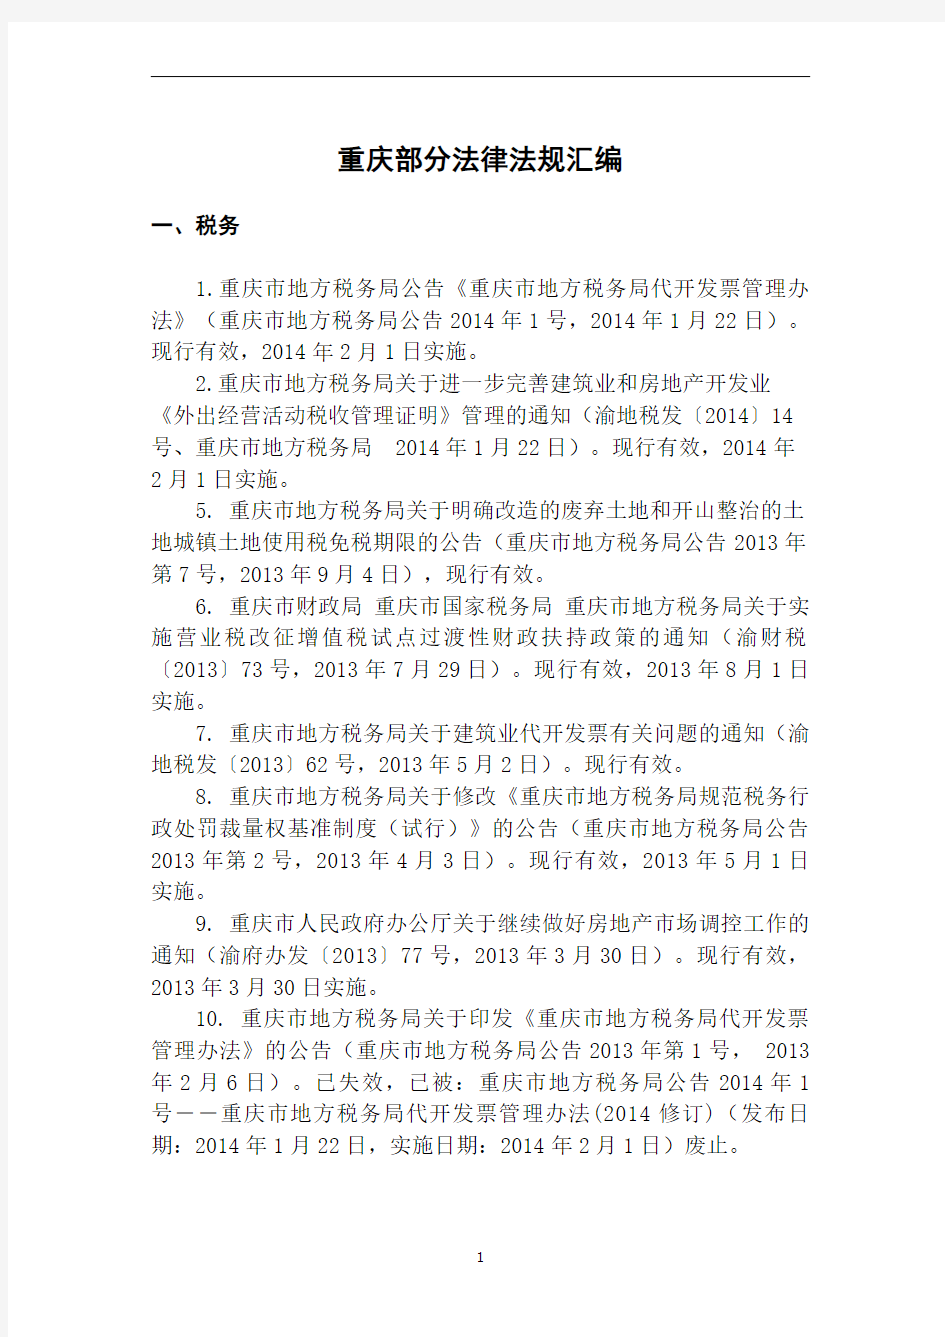 重庆部分法律法规汇编2014(定稿)